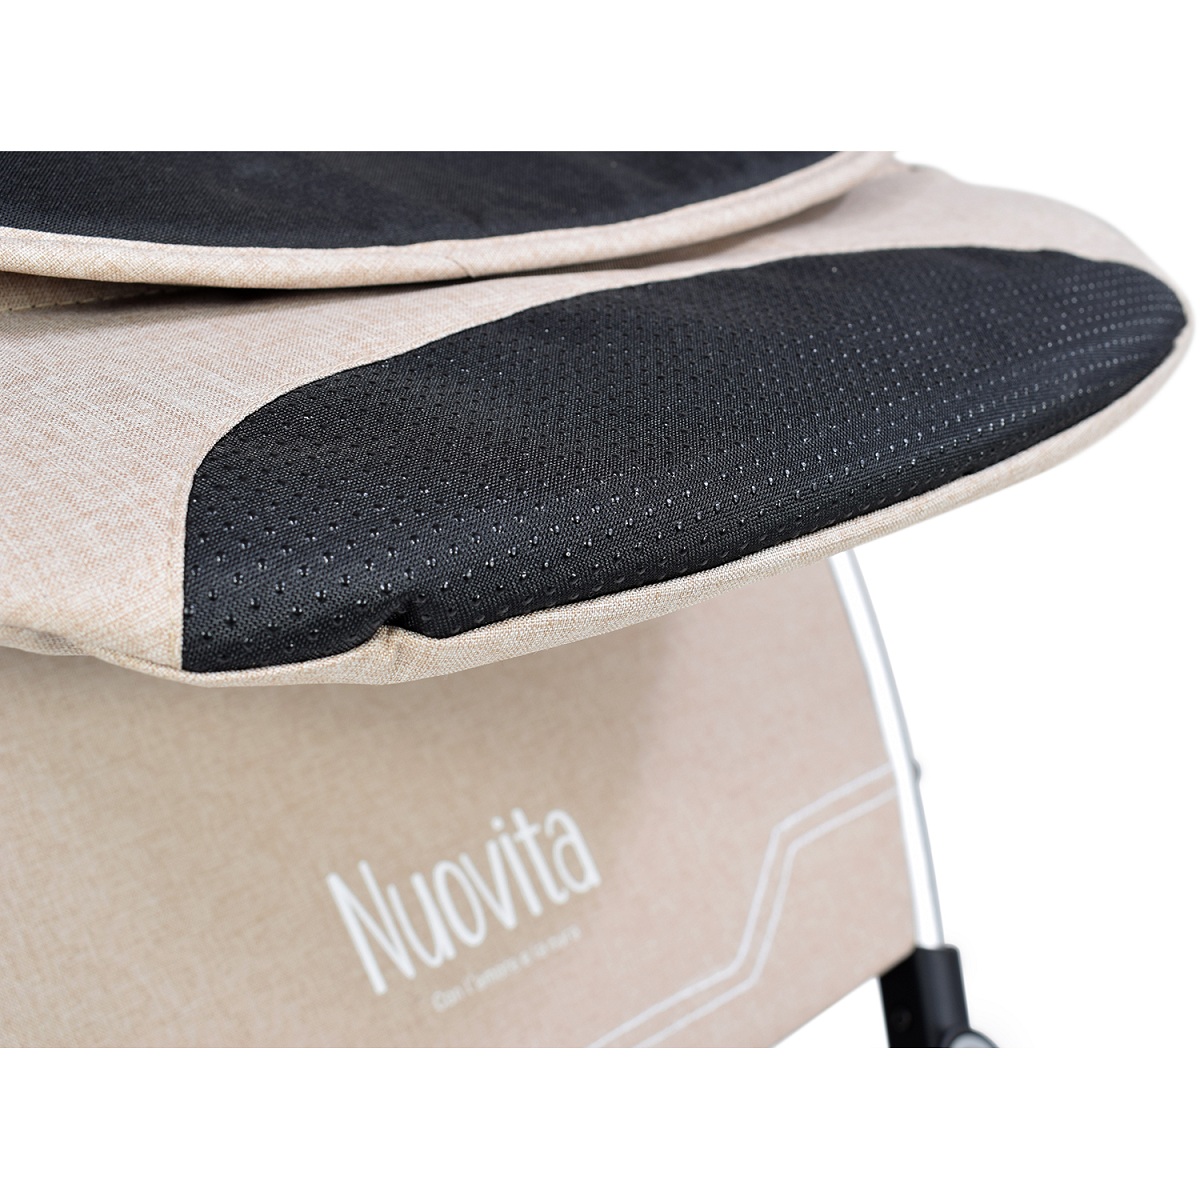 Прогулочная коляска Nuovita Giro, цвет джинсовый, шасси серебристое  